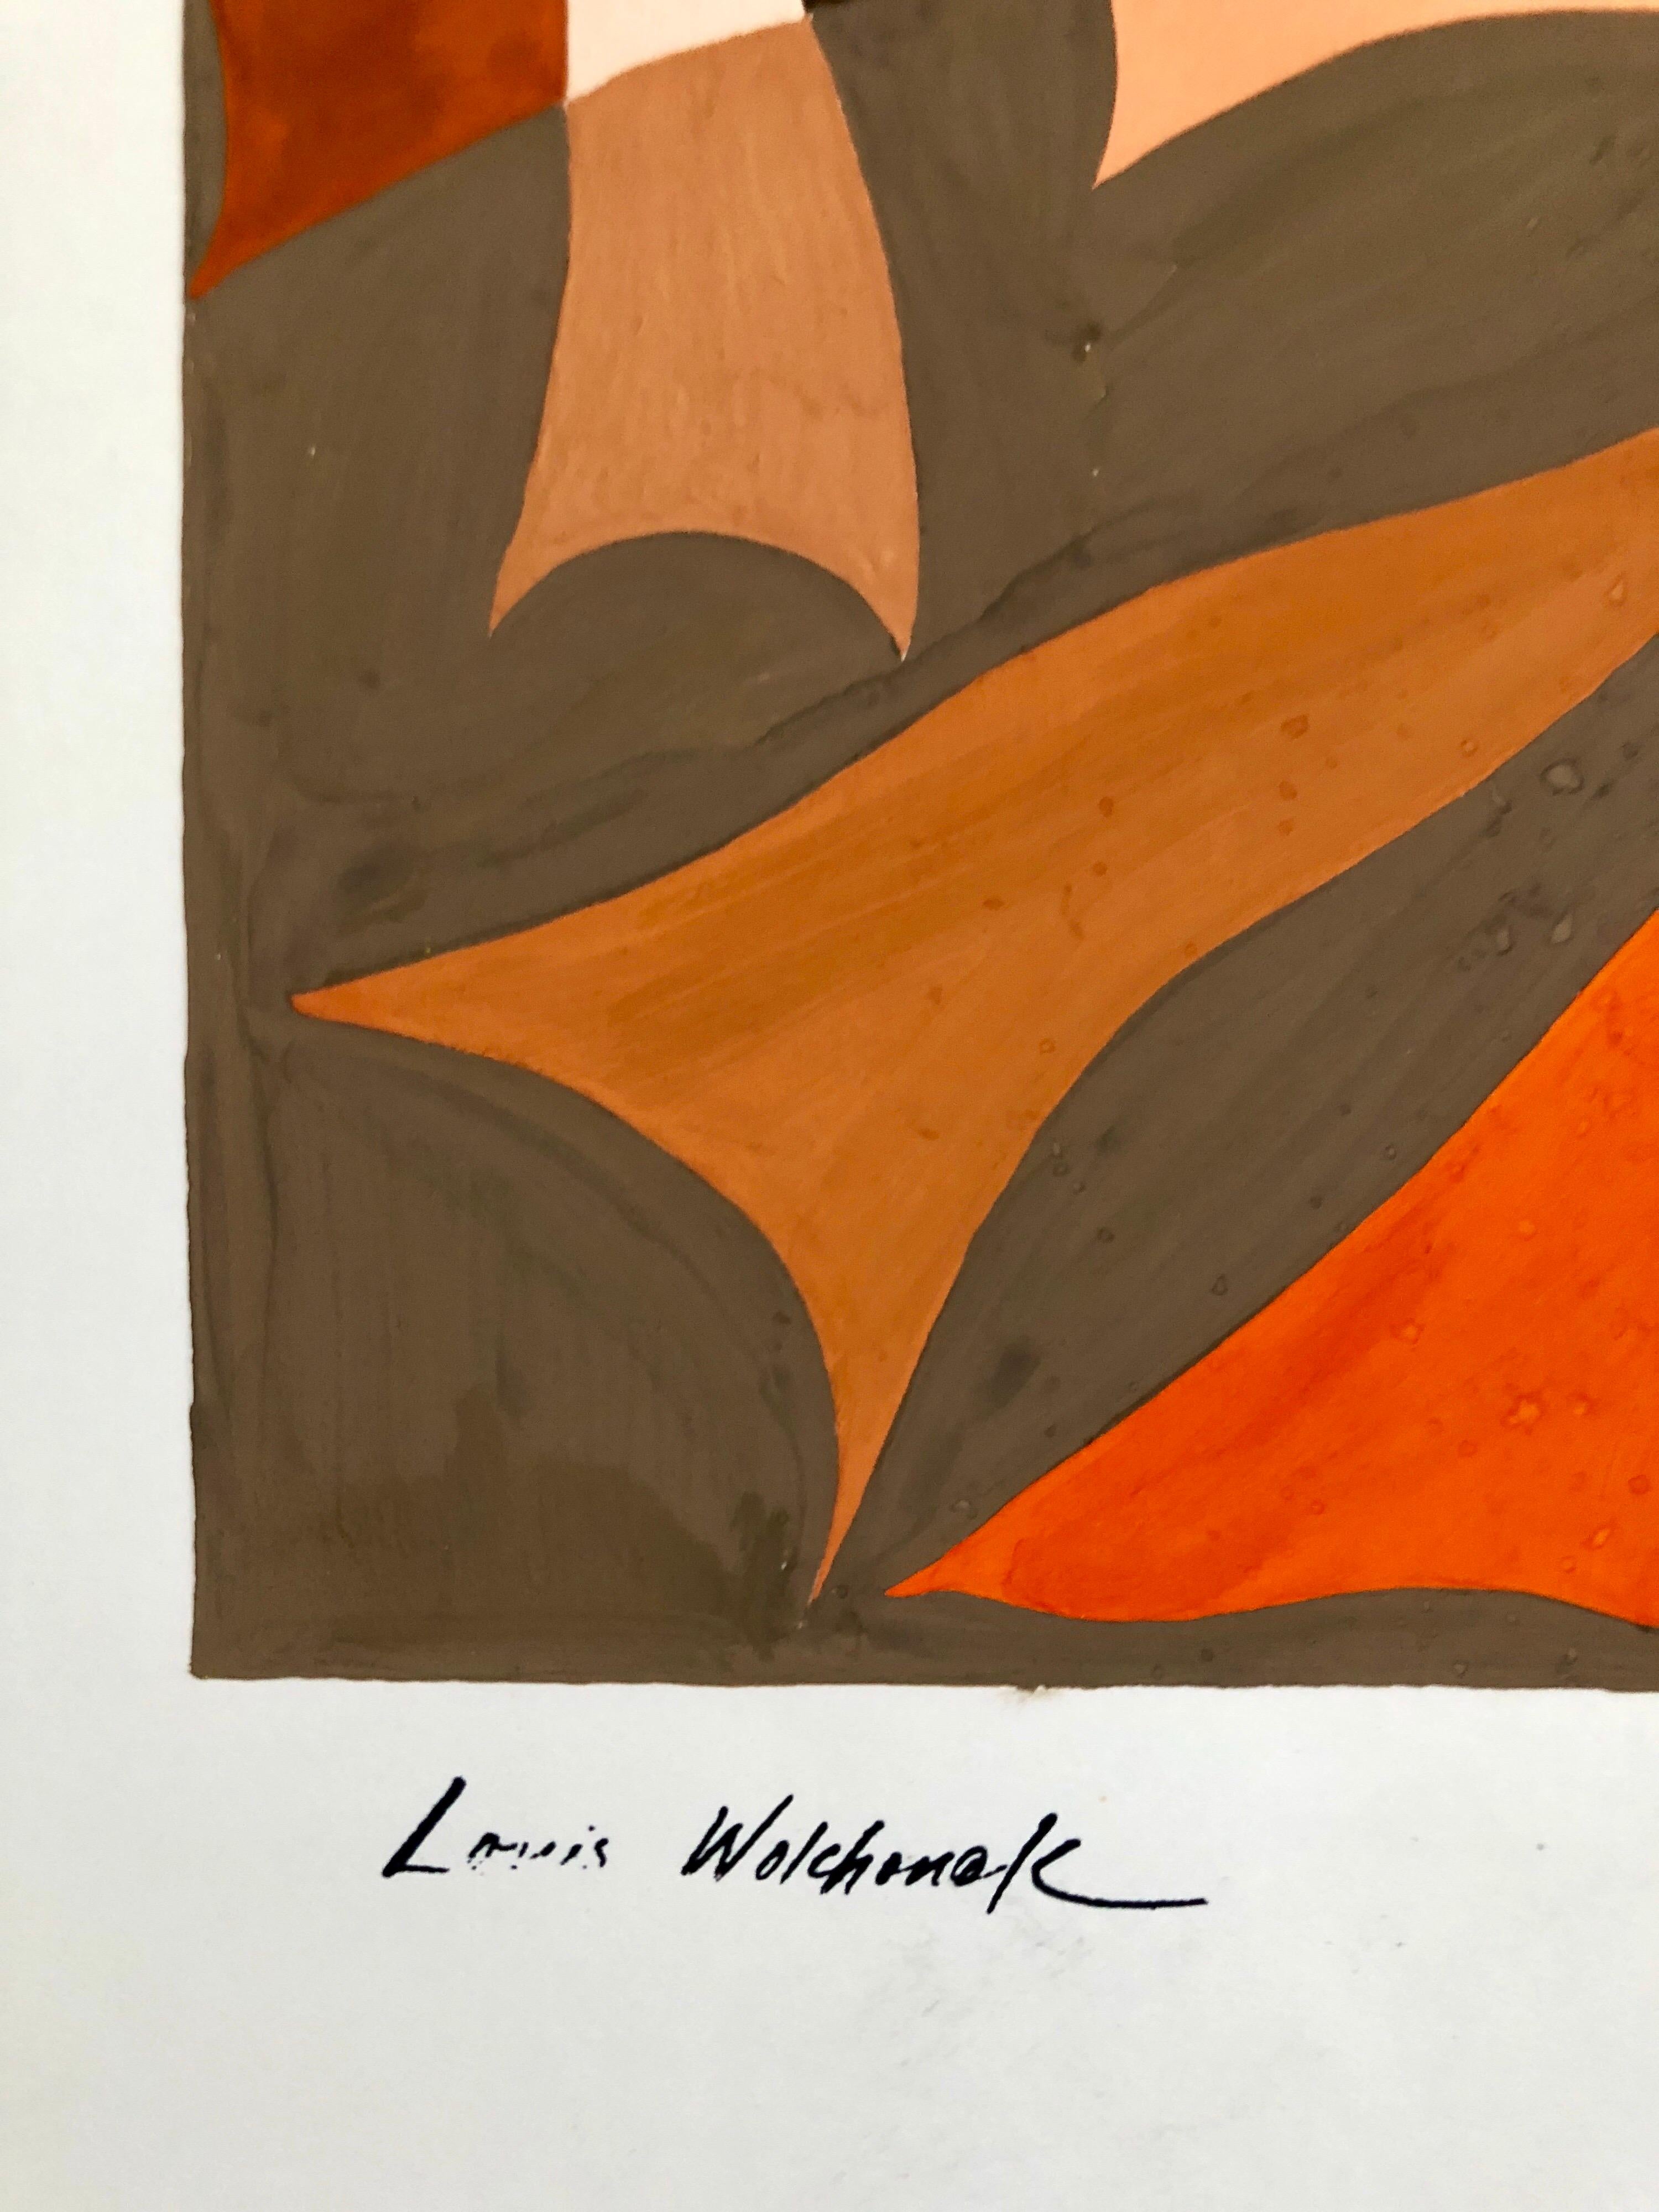 Abstrakt-expressionistisches Farb Gouache-Gemälde, Mid-Century Mod WPA, jüdischer Künstler – Painting von Louis Wolchonok